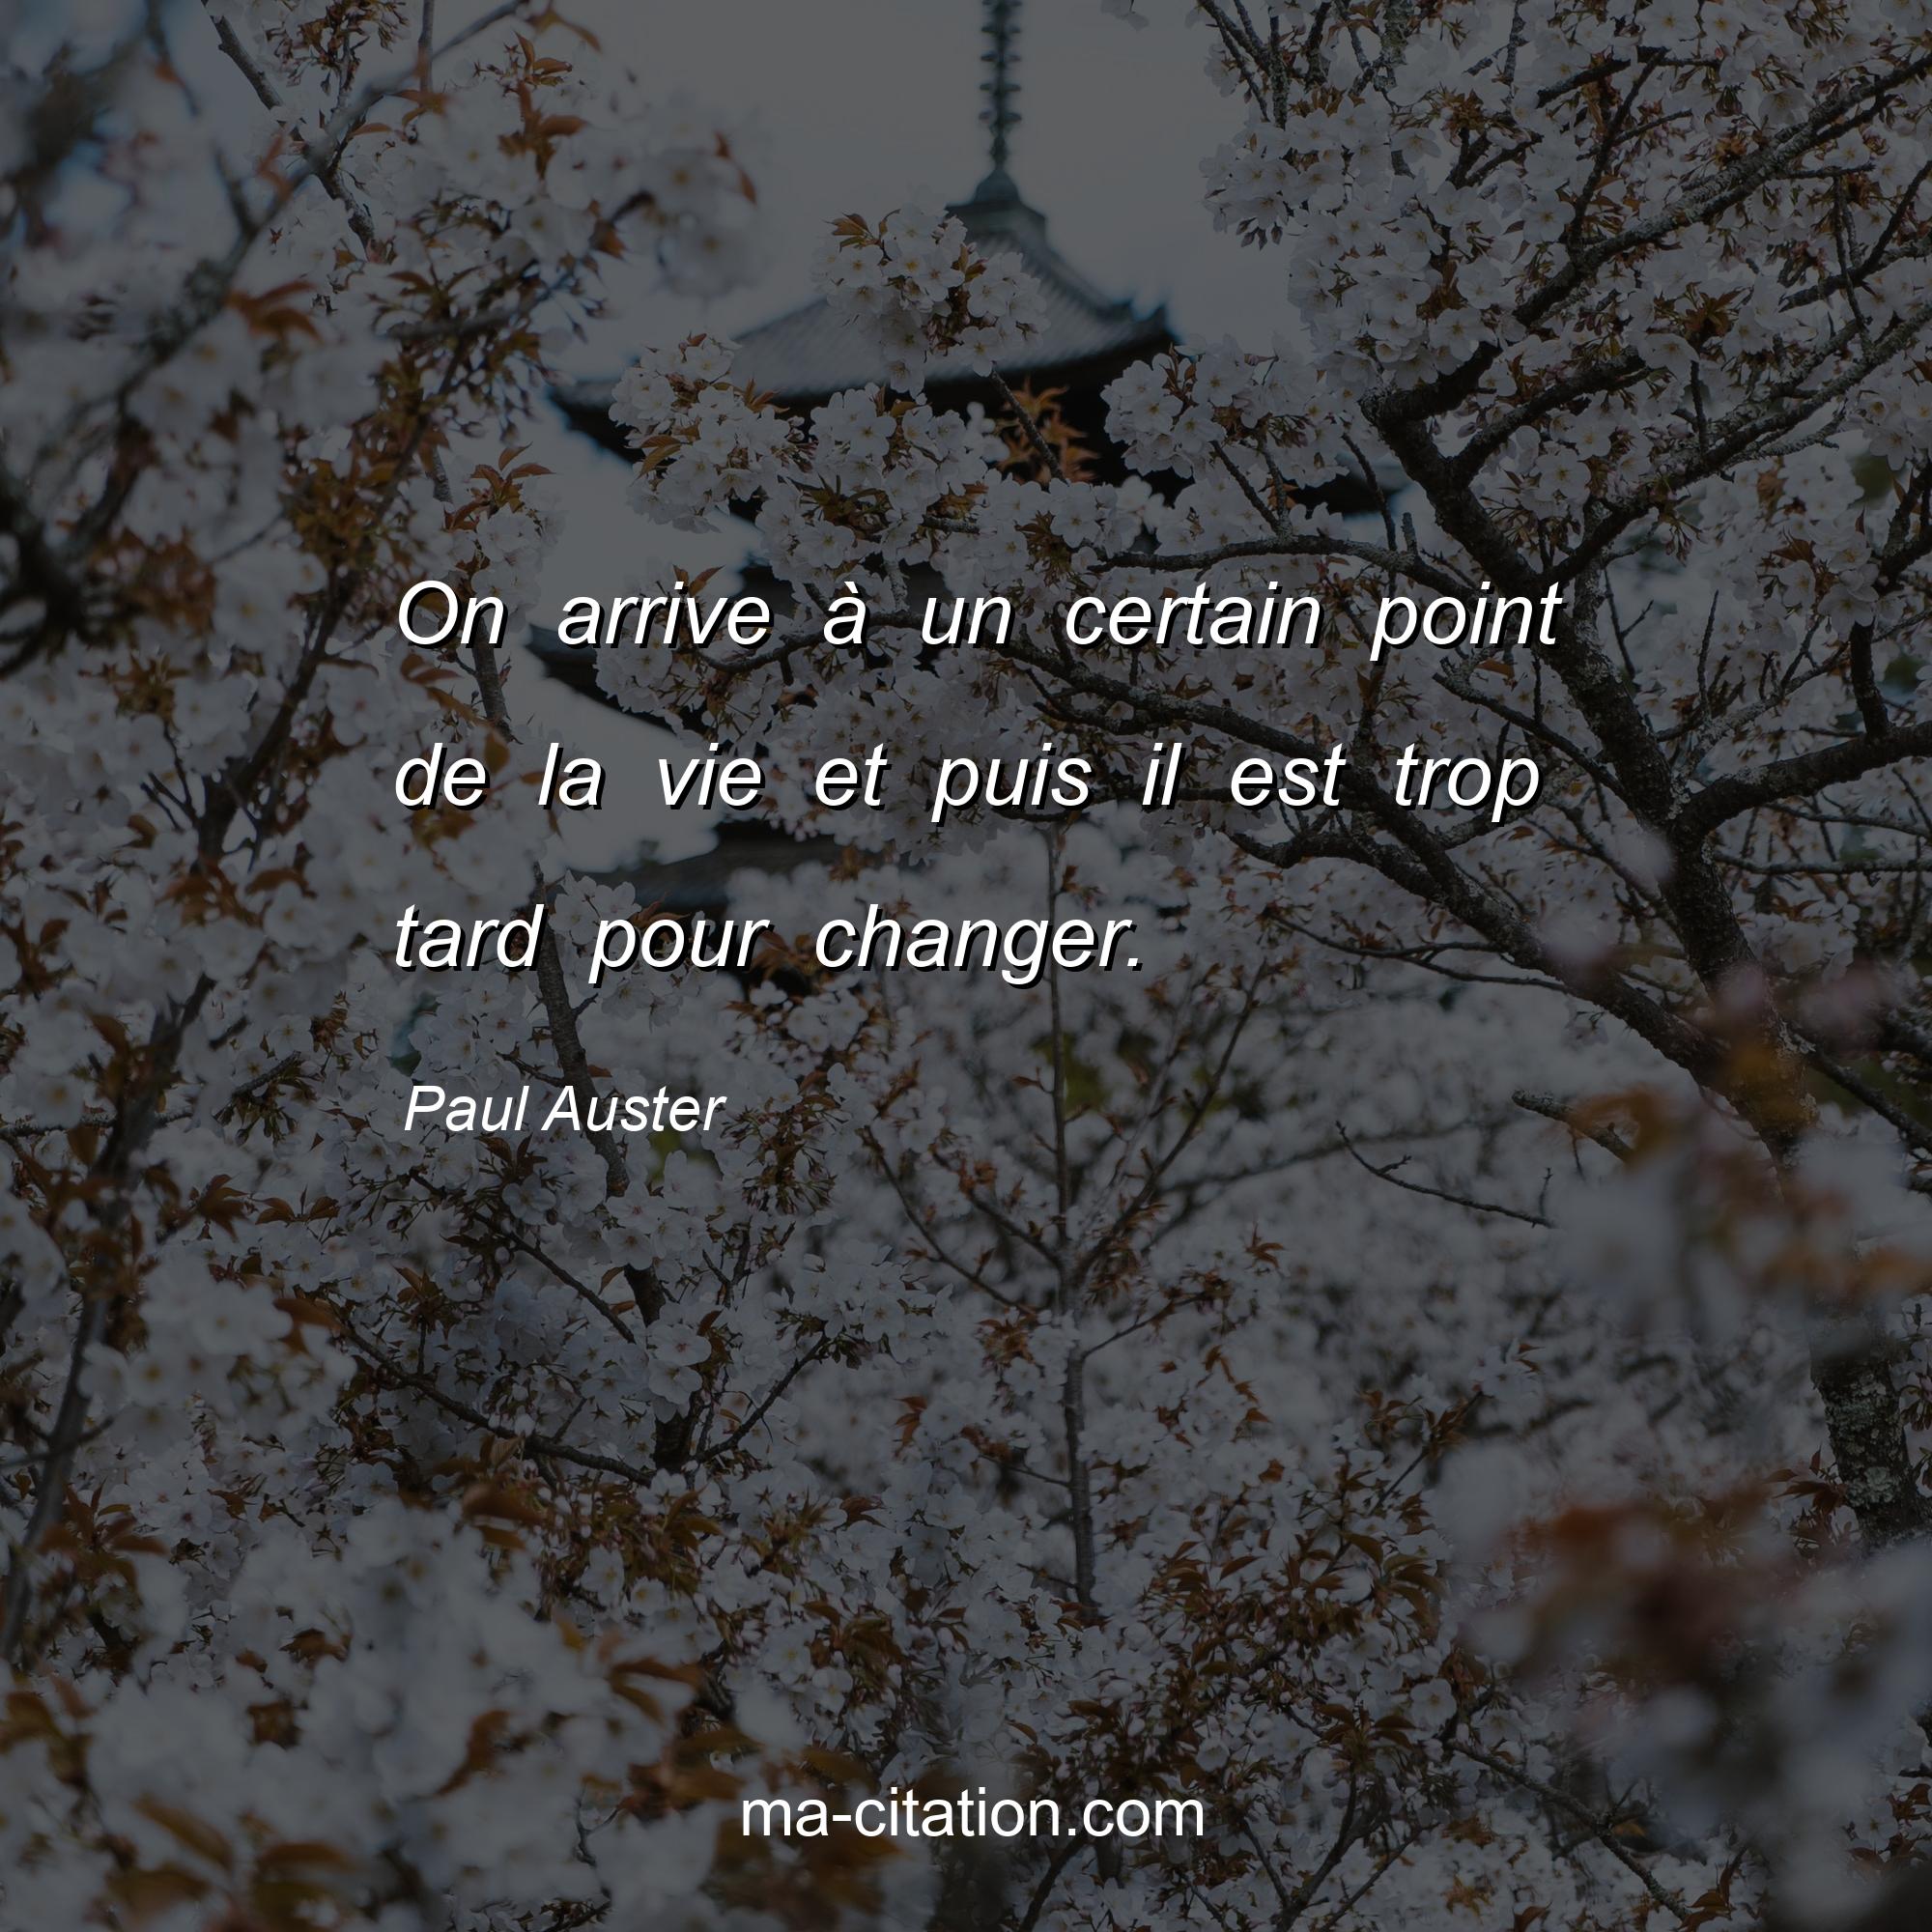 Paul Auster : On arrive à un certain point de la vie et puis il est trop tard pour changer.